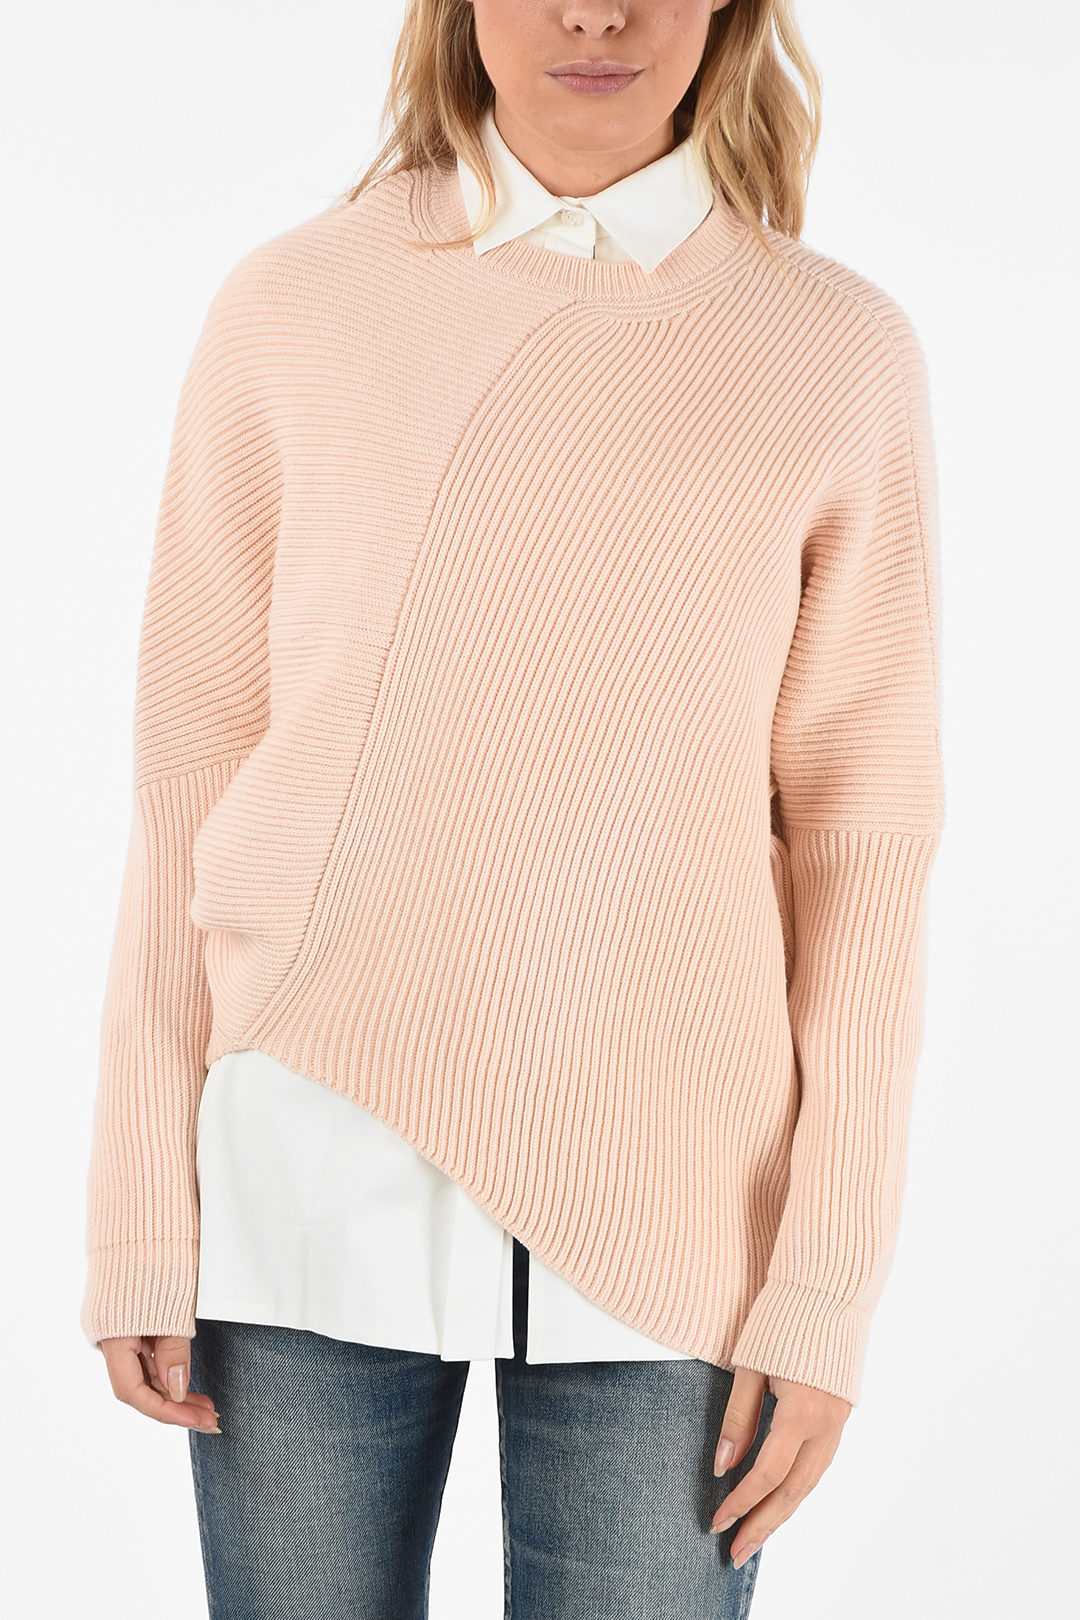 Stella Mccartney Asymmetric Sweater Sale | bellvalefarms.com